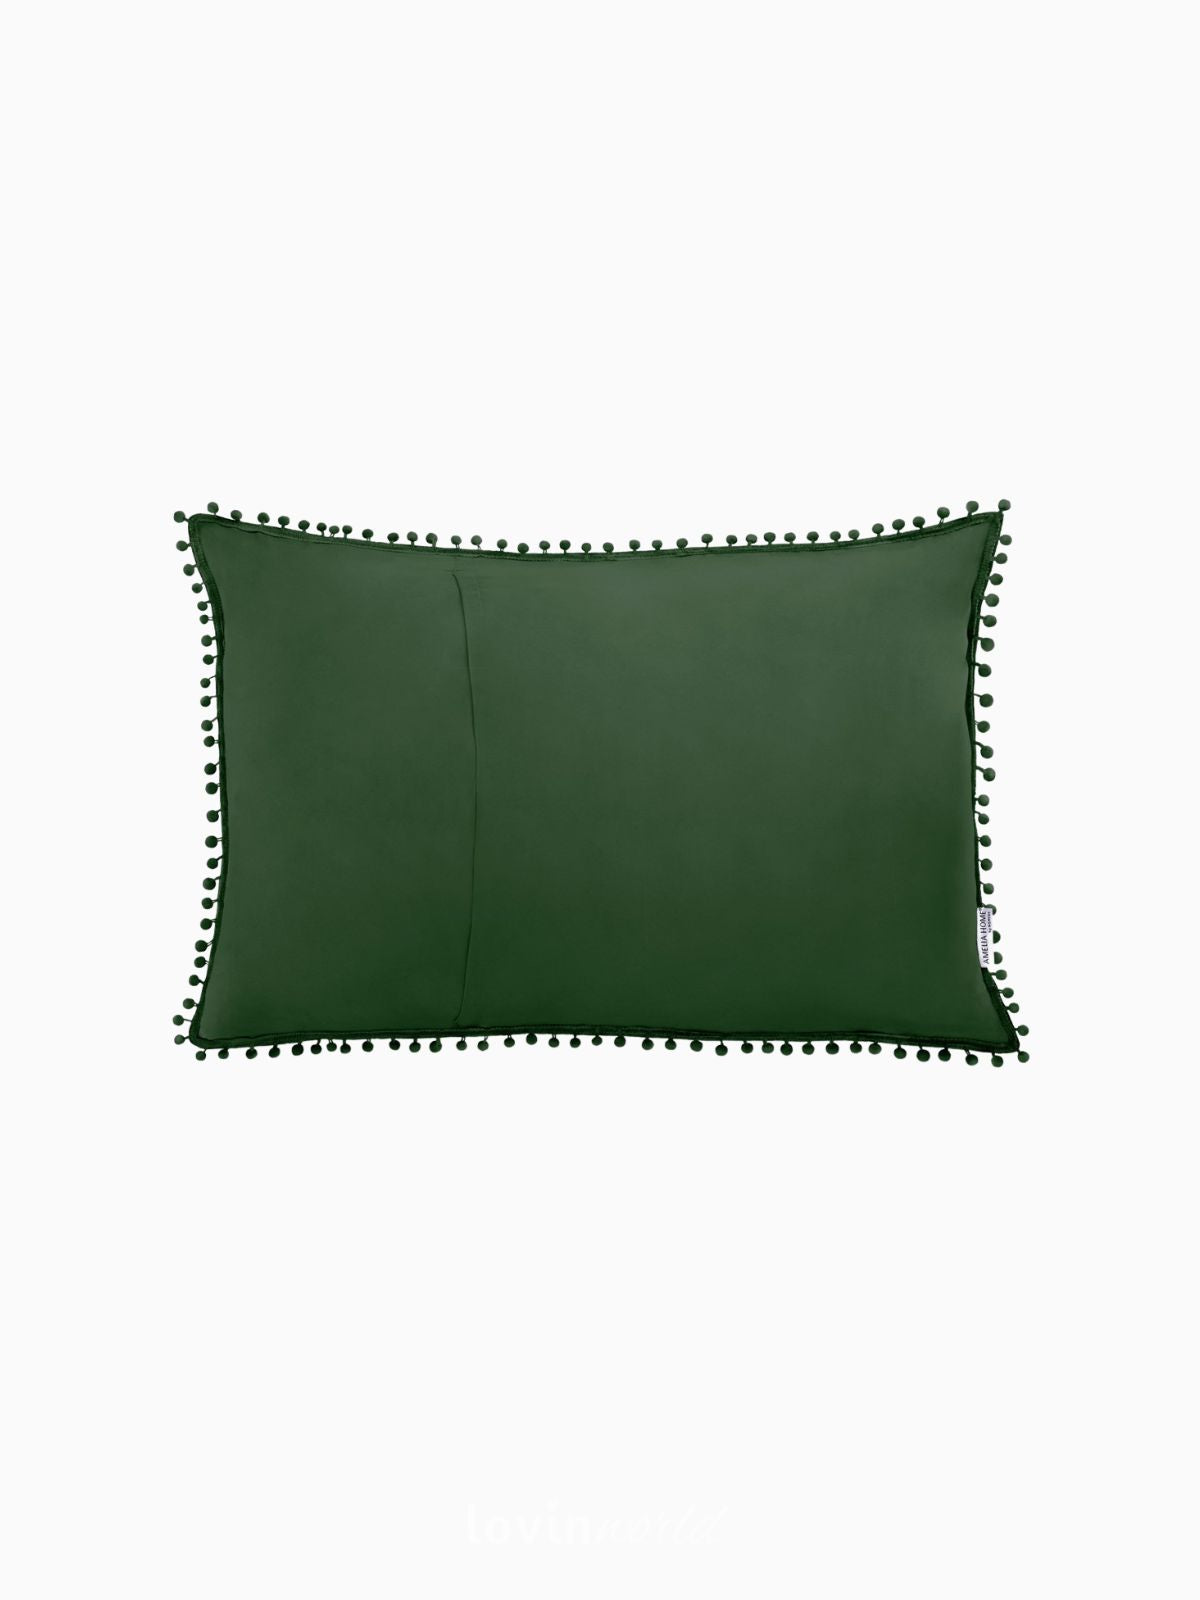 Cuscino decorativo Meadore in colore verde 50x70 cm.-2